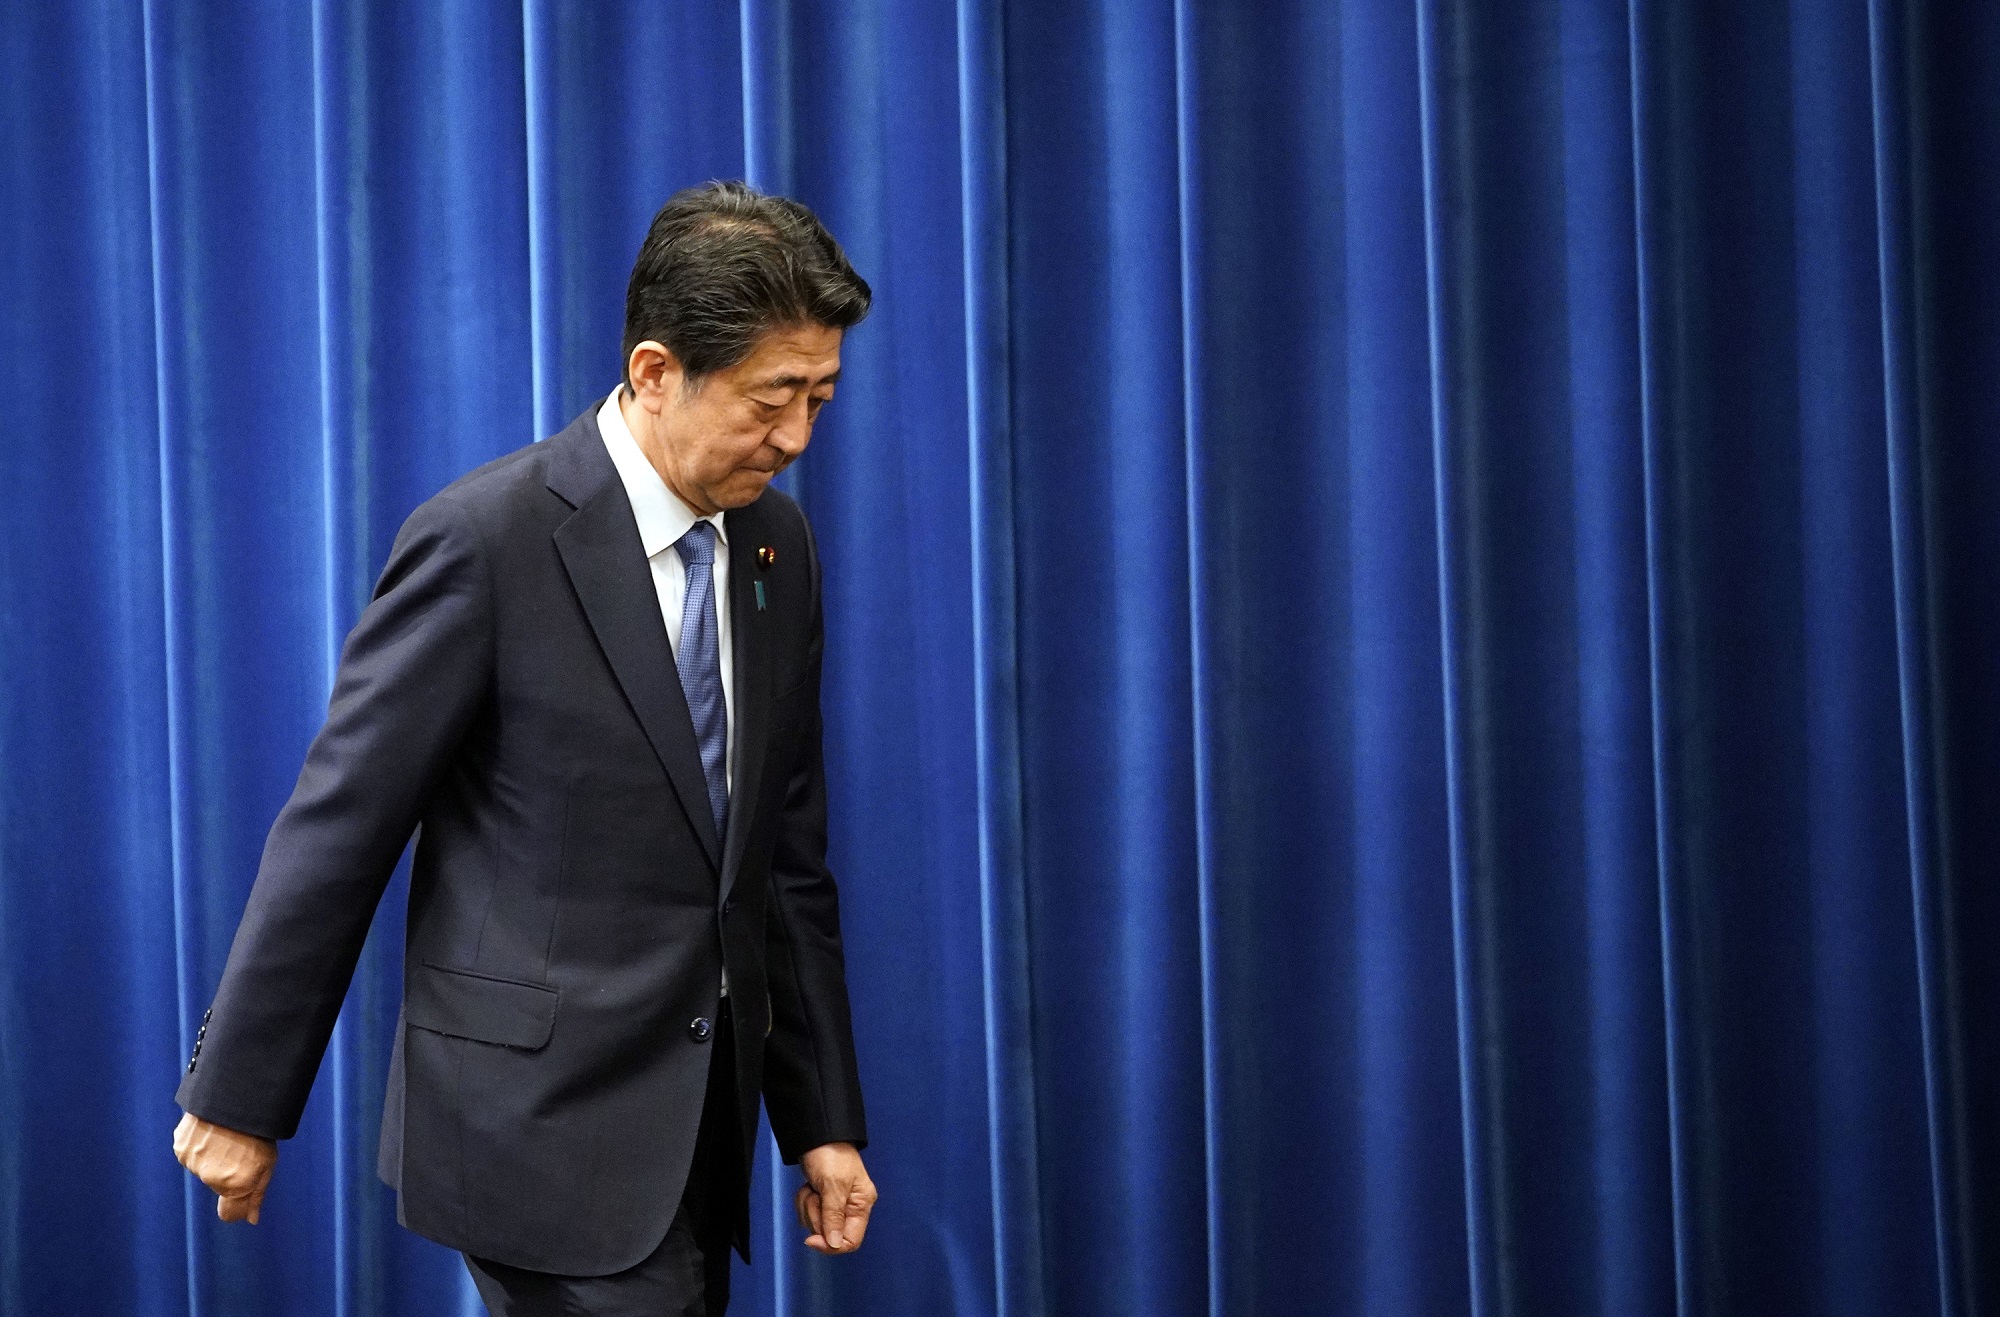 Ιαπωνία: Στα 1,83 εκατομμύρια δολάρια το κόστος της τελετής της κηδείας, του δολοφονημένου Σίνζο Άμπε